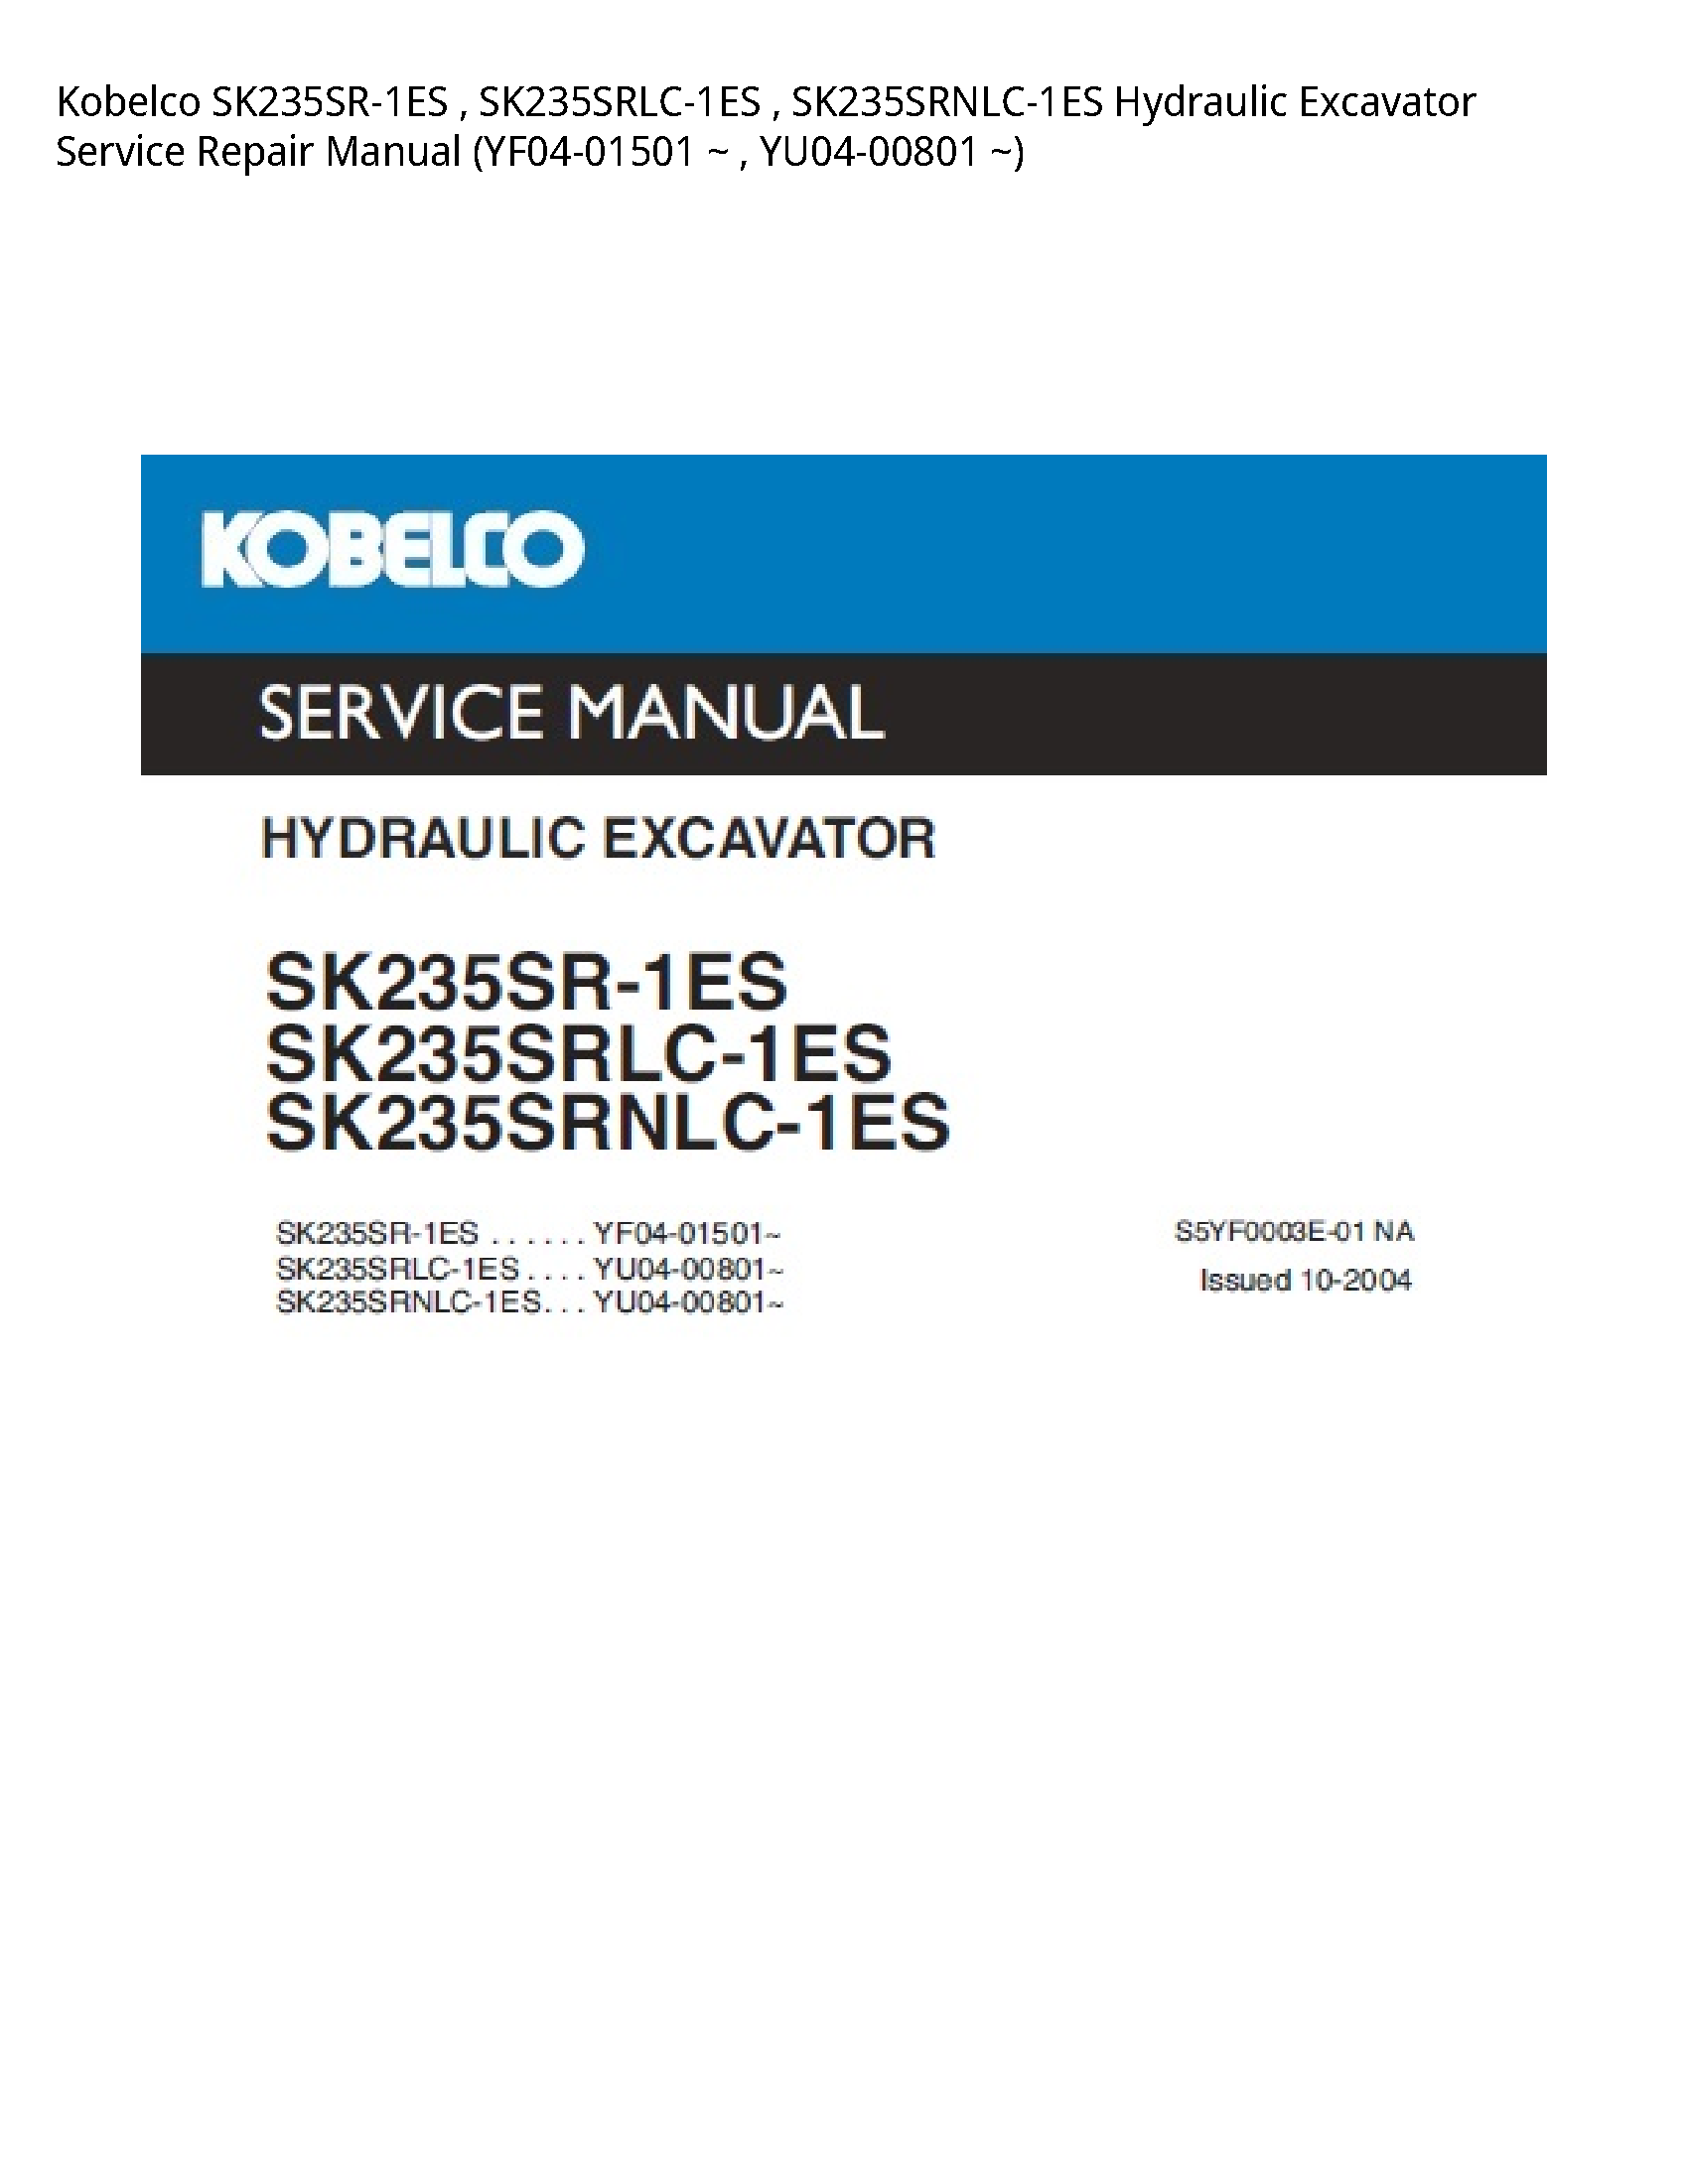 Kobelco SK235SR-1ES Hydraulic Excavator manual